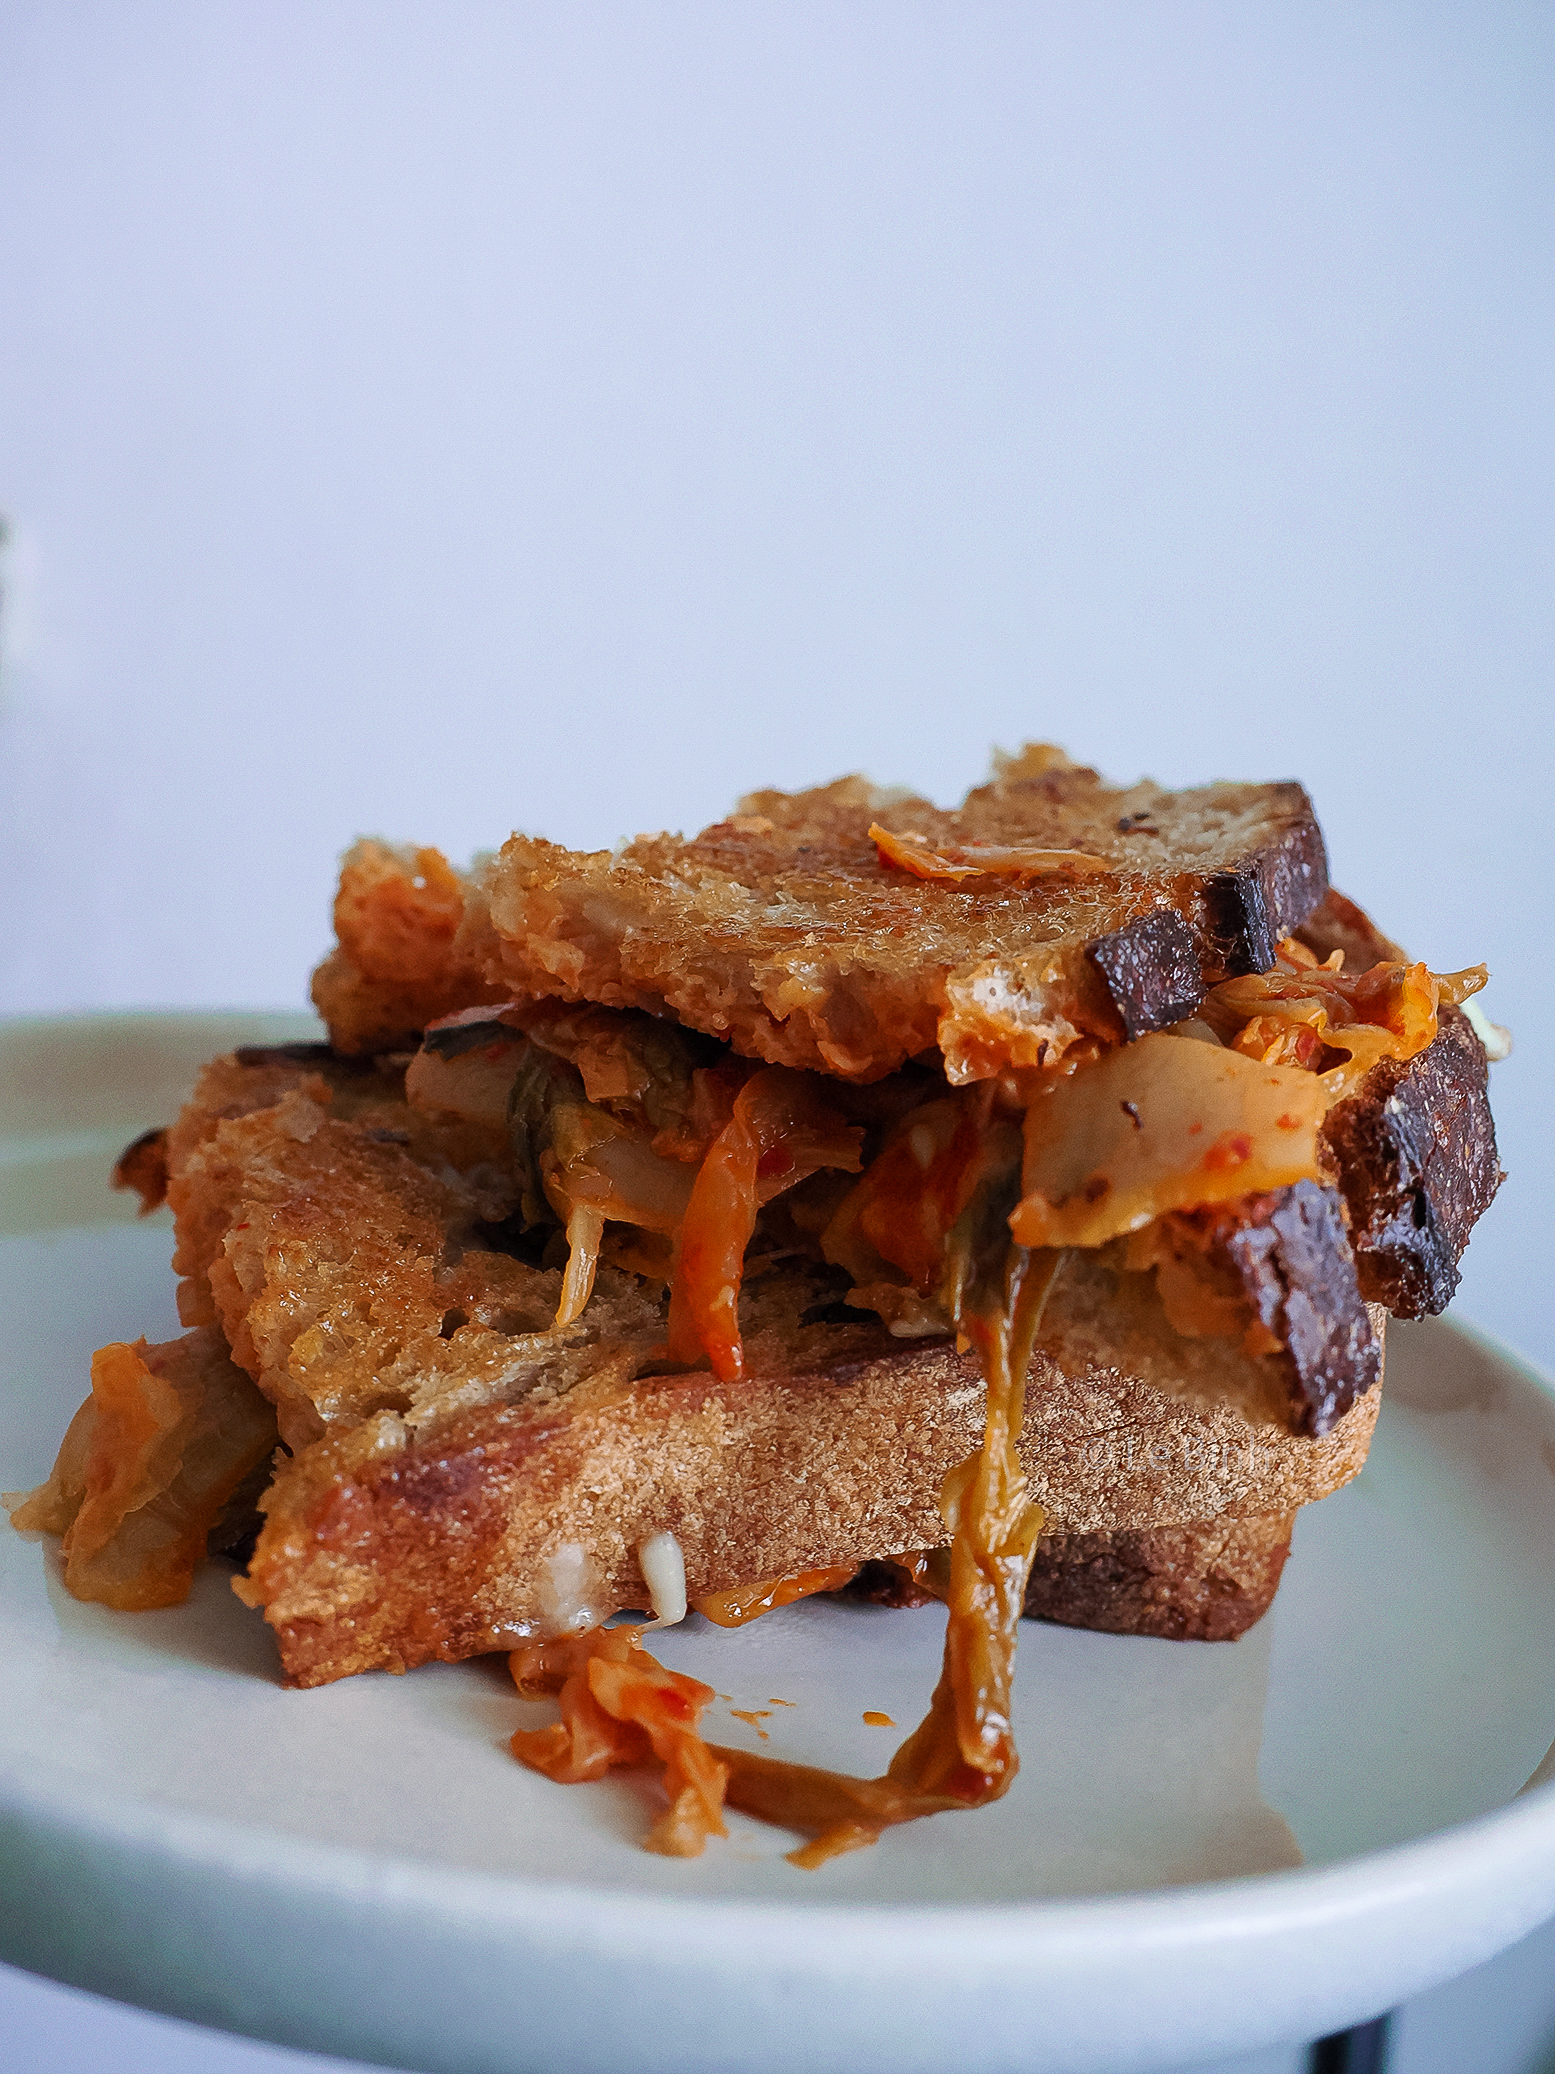 kimchi cheese toastie with Kelly loves kimchi recipe